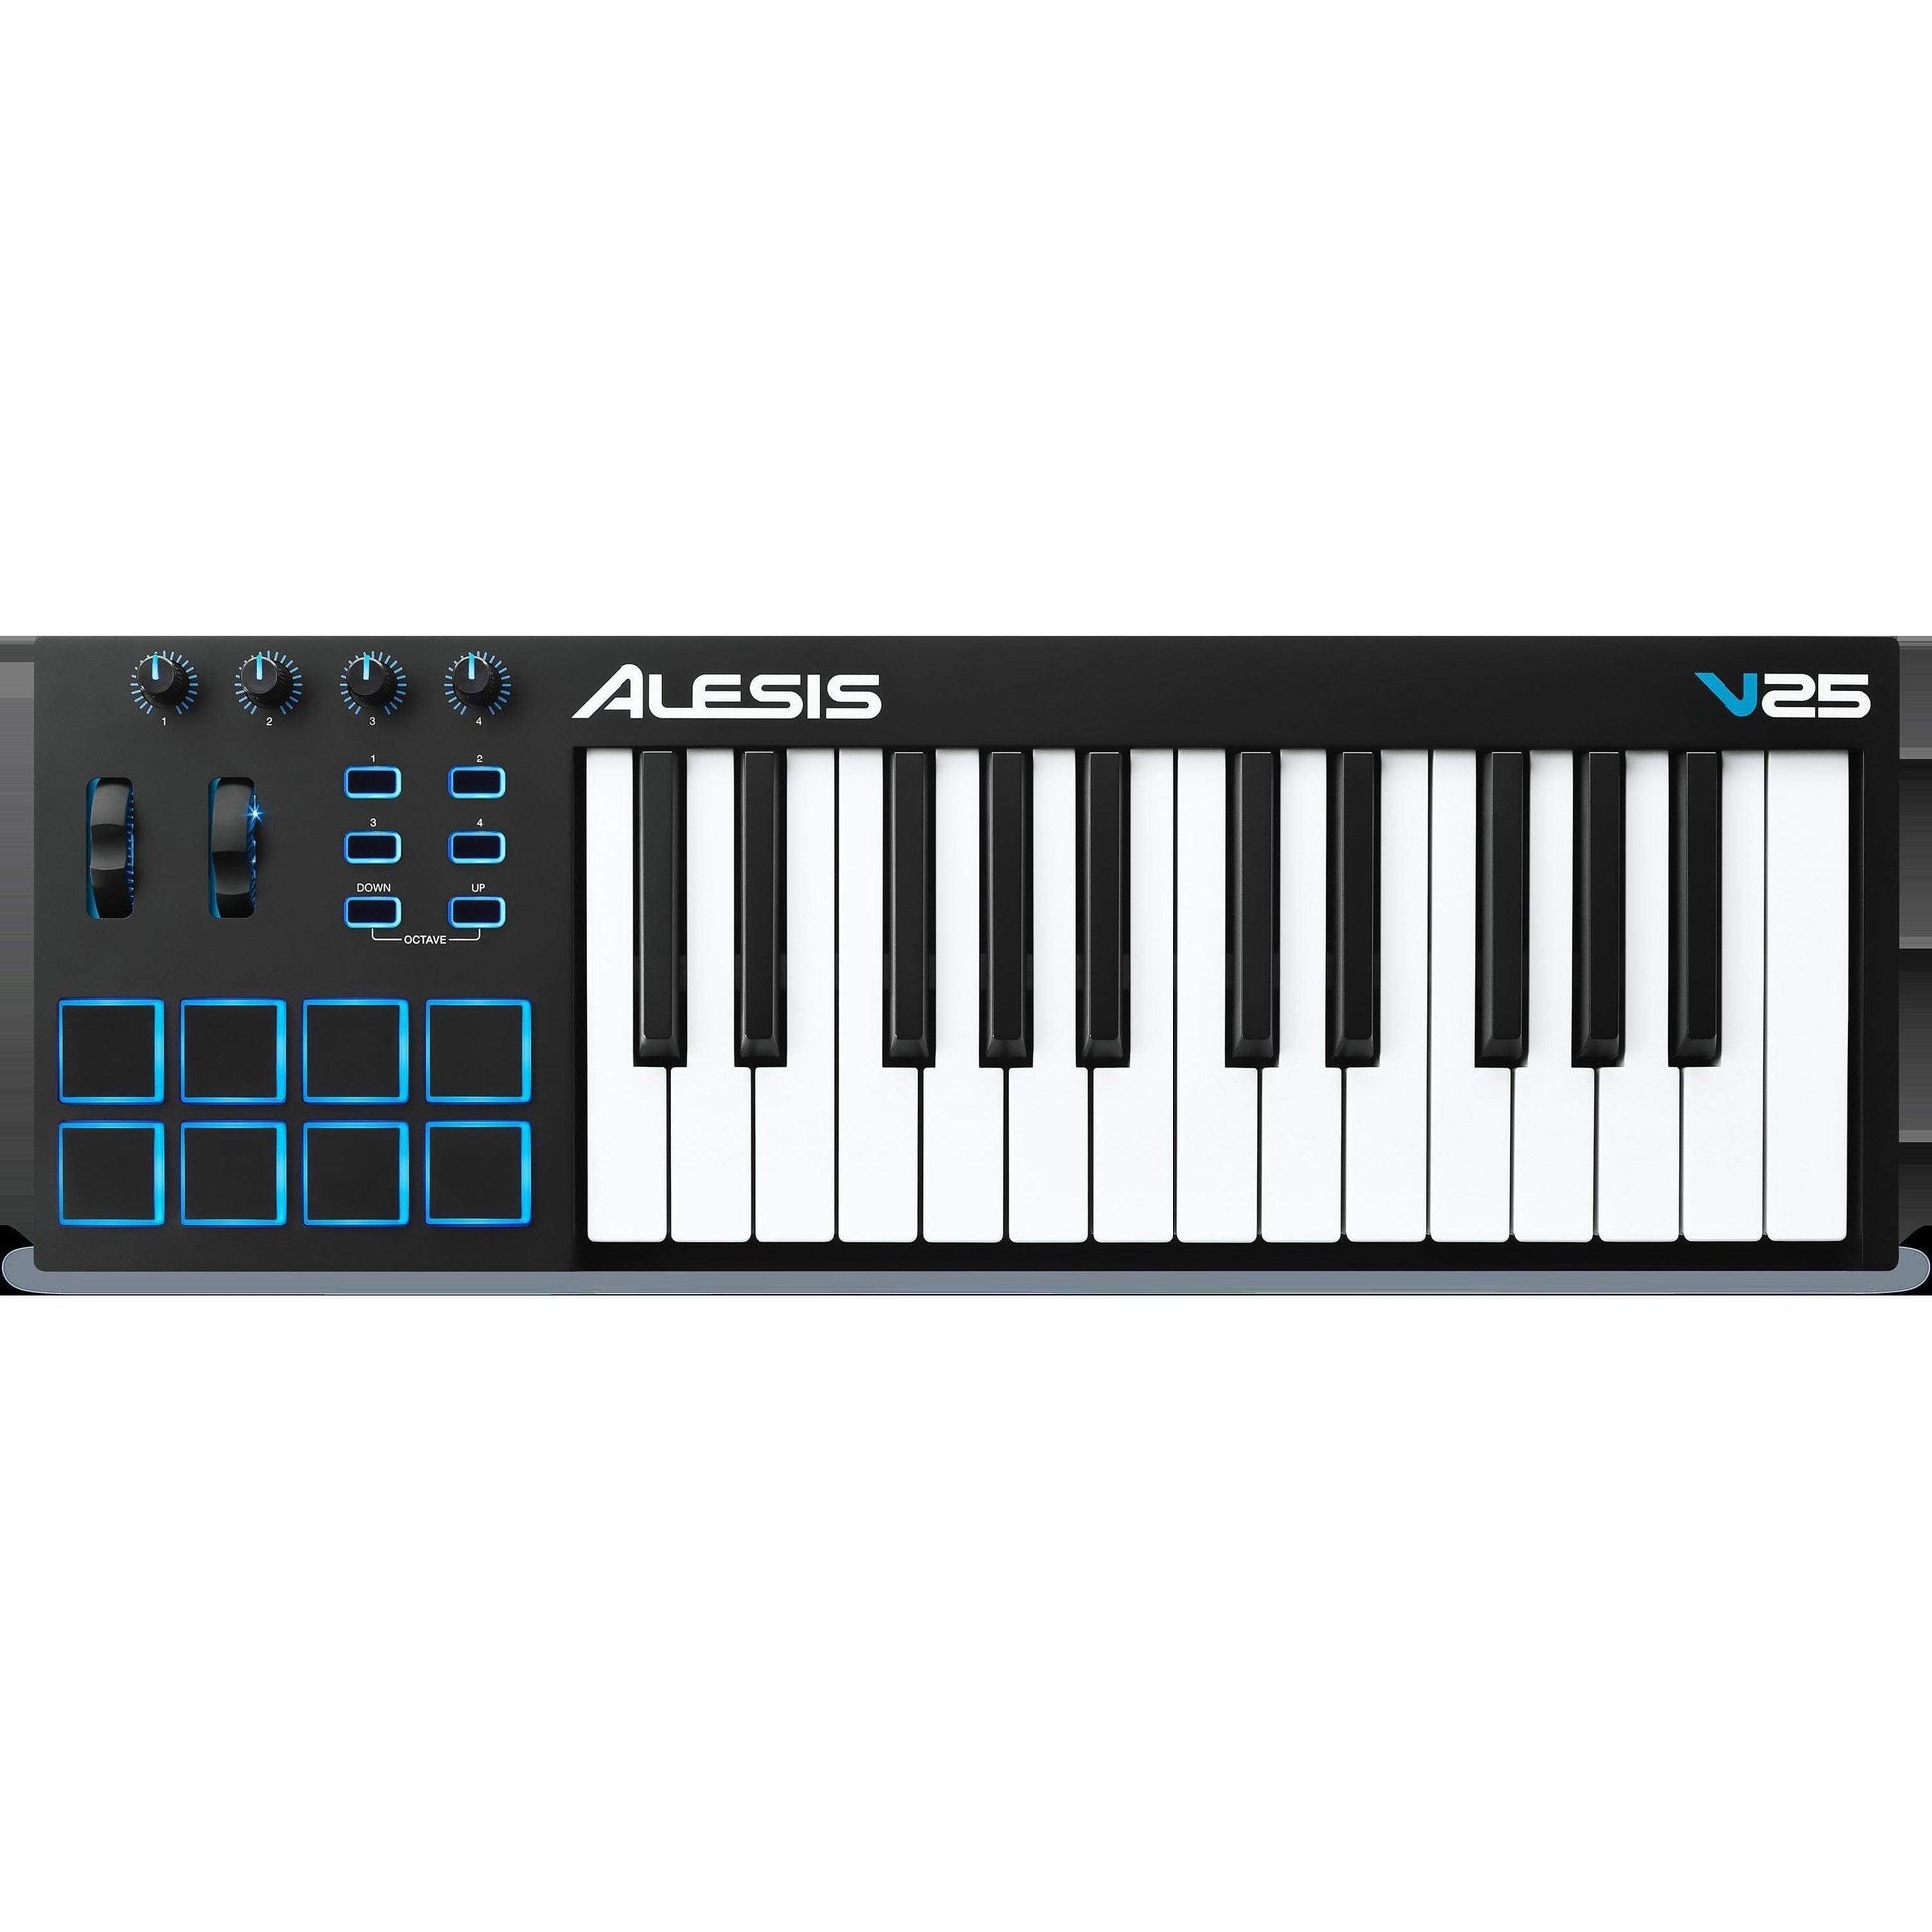 Alesis V25 25-Key USB MIDI Keyboard